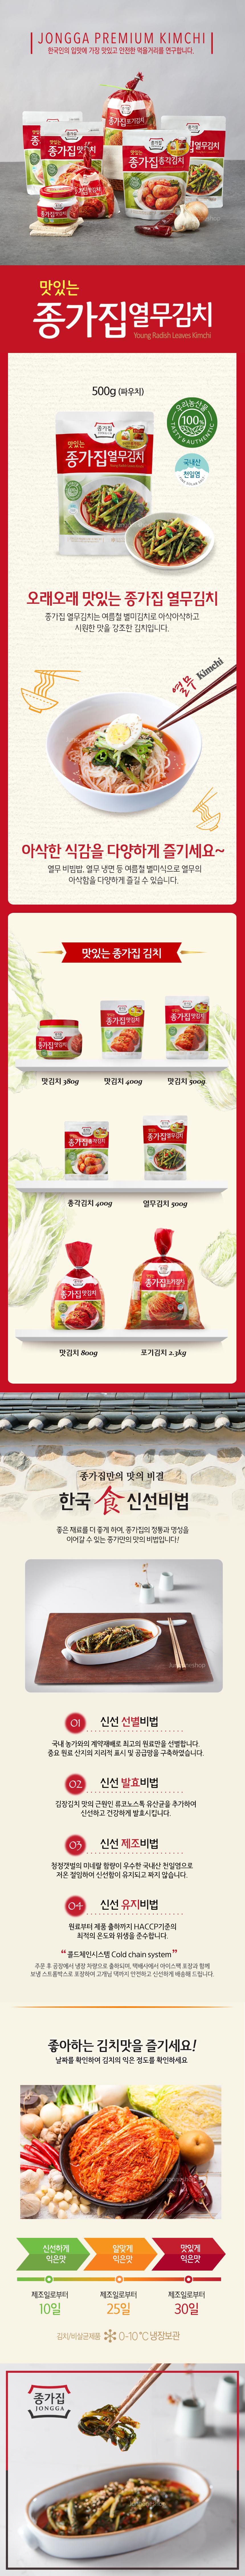 韓國食品-[宗家] 蘿蔔葉泡菜 500g